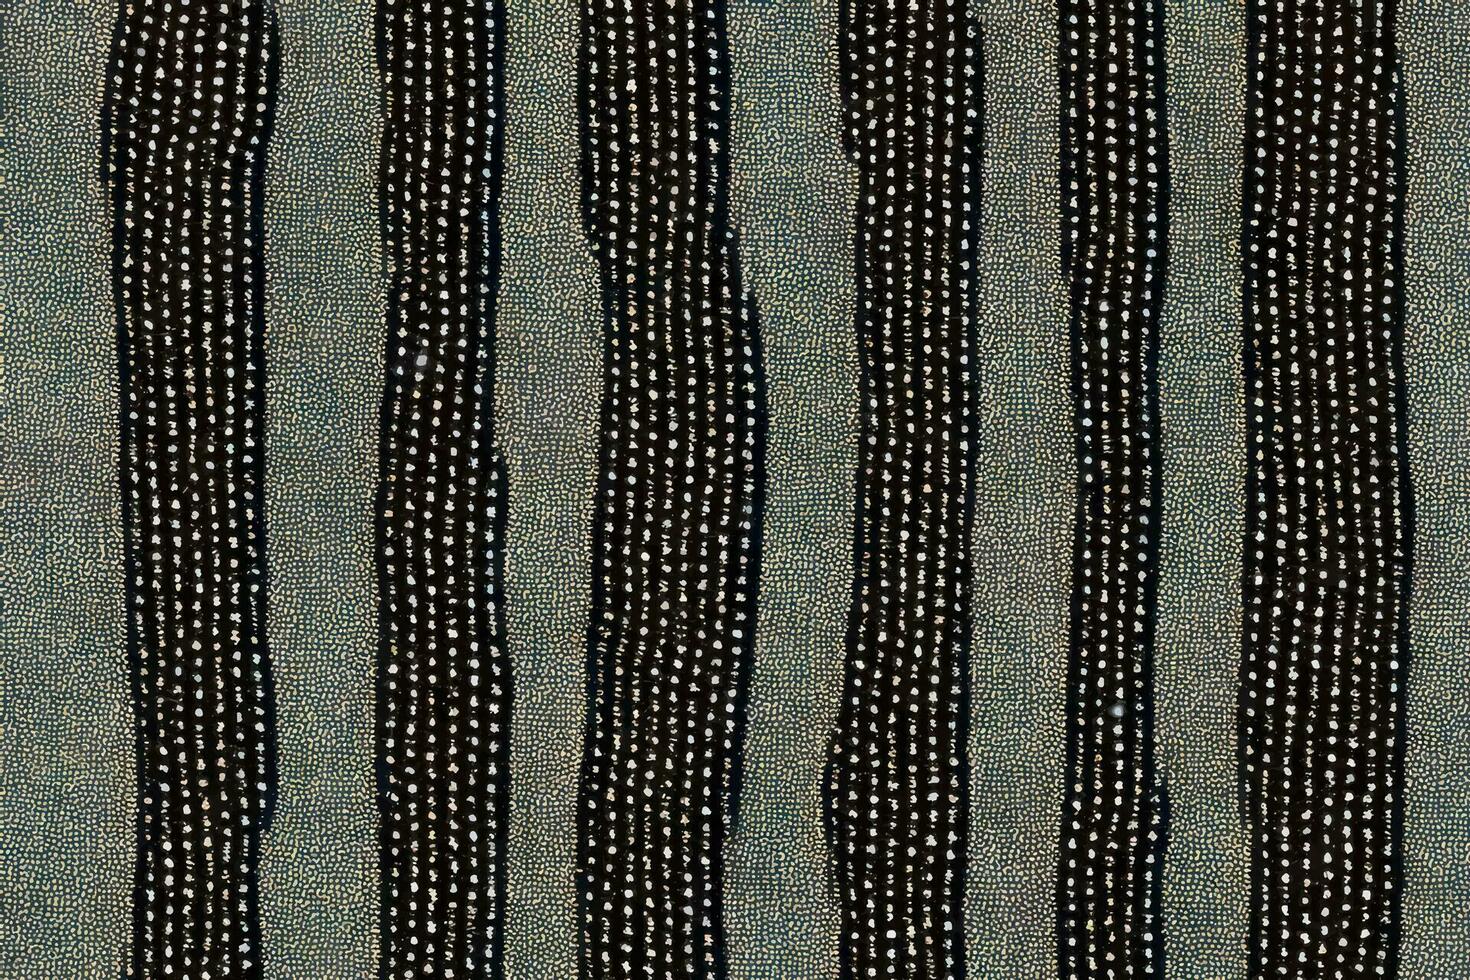 Krawatte Farbstoff Shibori tye sterben abstrakt Farbe Bürste Batik Tinte Spiral- Strudel Stoff retro botanisch Kreis Design geometrisch wiederholen Zeichnung Fliese Vektor Grün braun dunkel Blau Farben , grau Linie